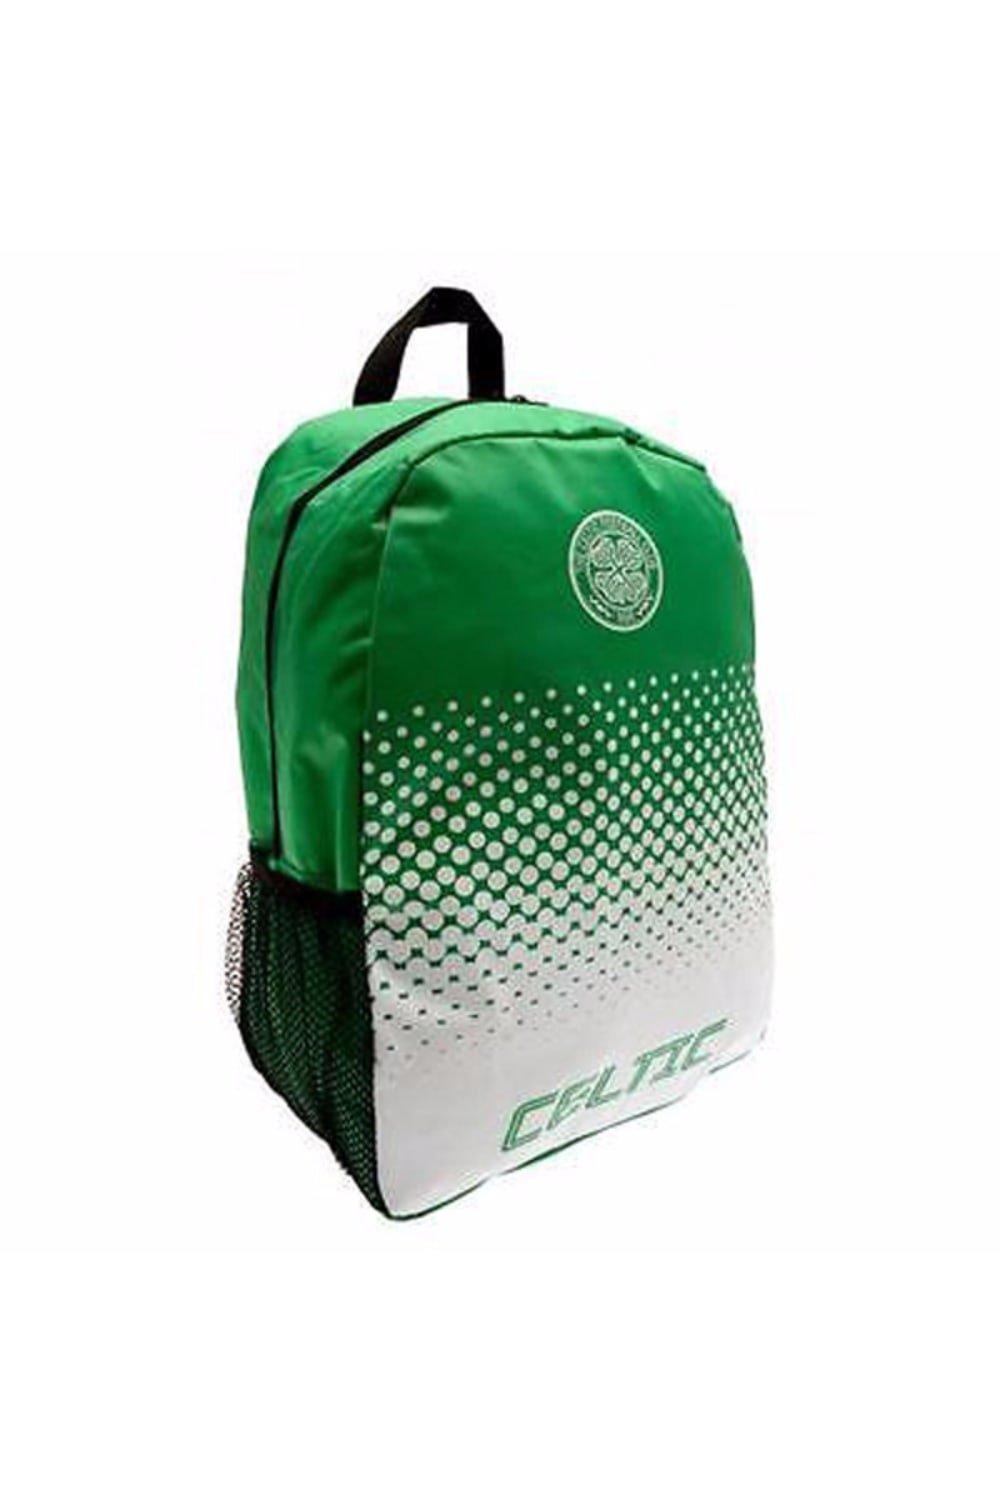 цена Официальный рюкзак Fade Football Crest с дизайном Celtic FC, зеленый